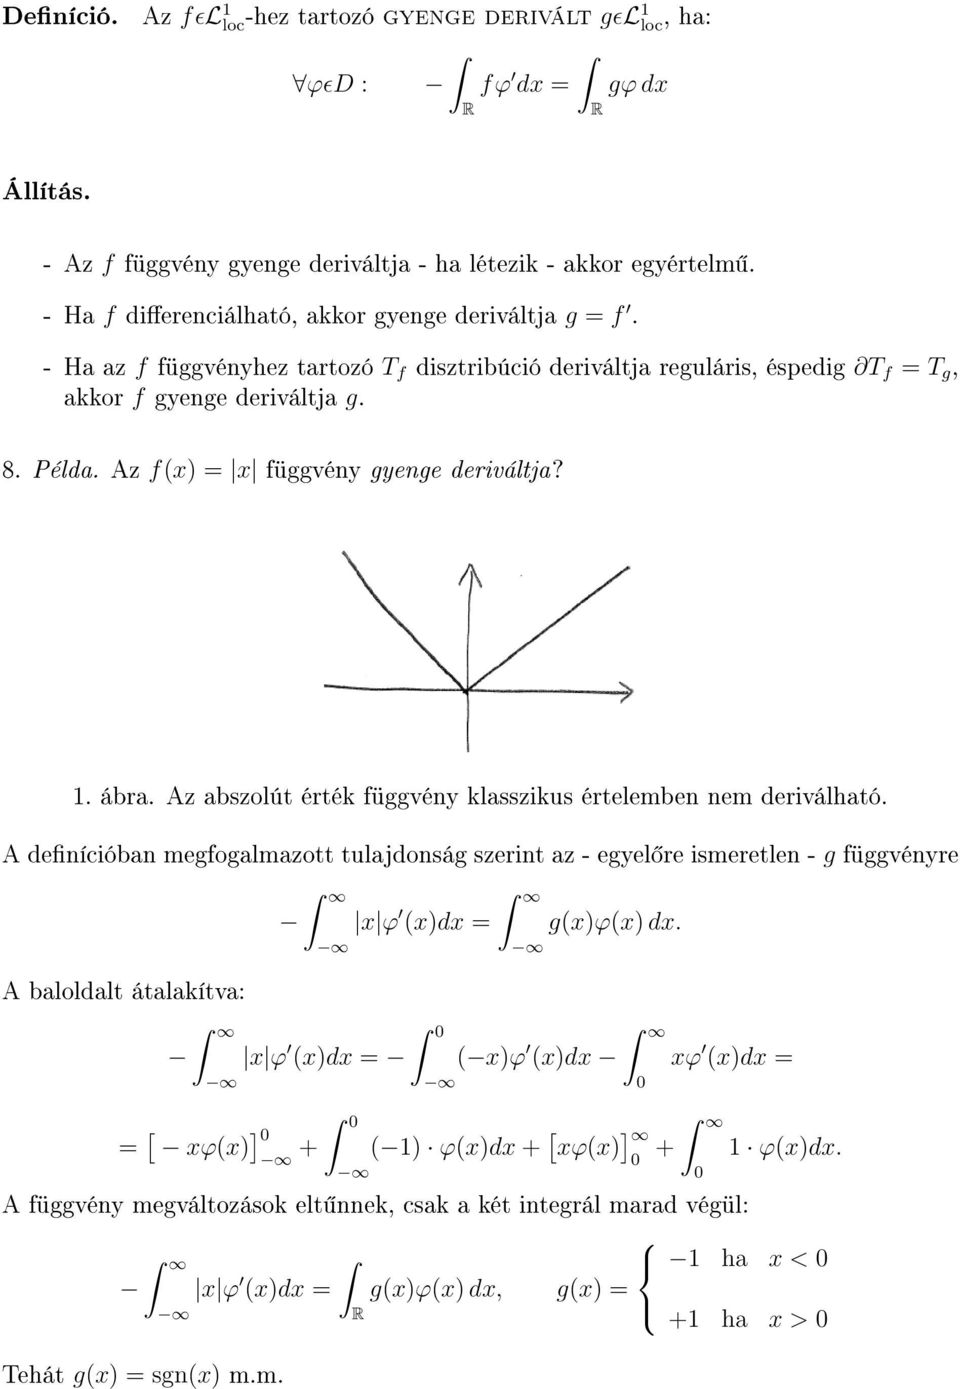 Az f(x) = x függvény gyenge deriváltja? 1. ábra. Az abszolút érték függvény klasszikus értelemben nem deriválható.